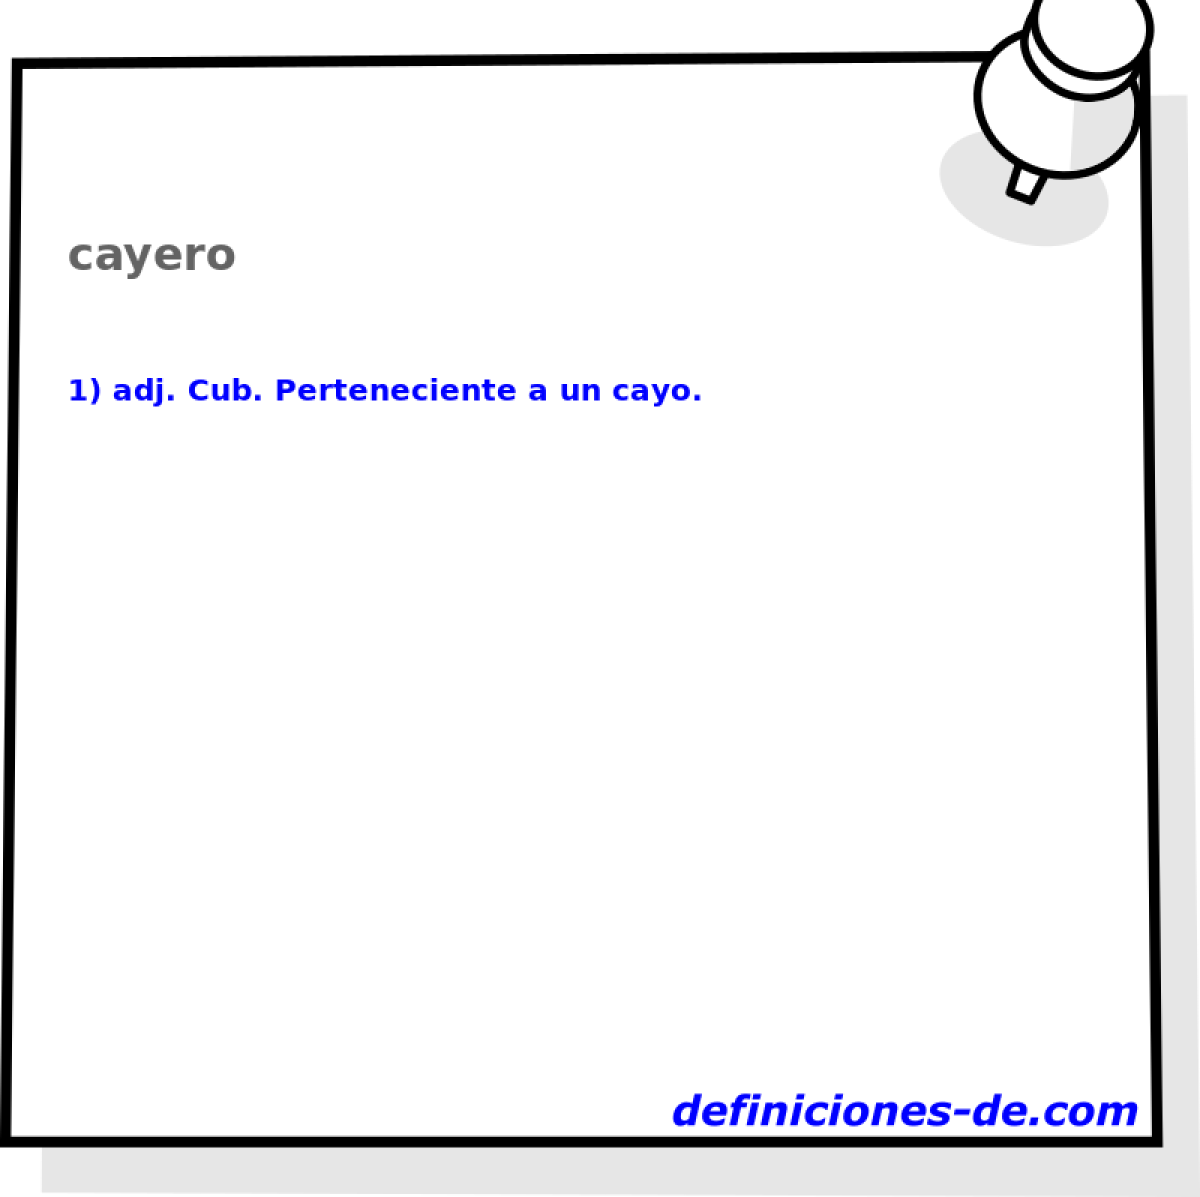 cayero 